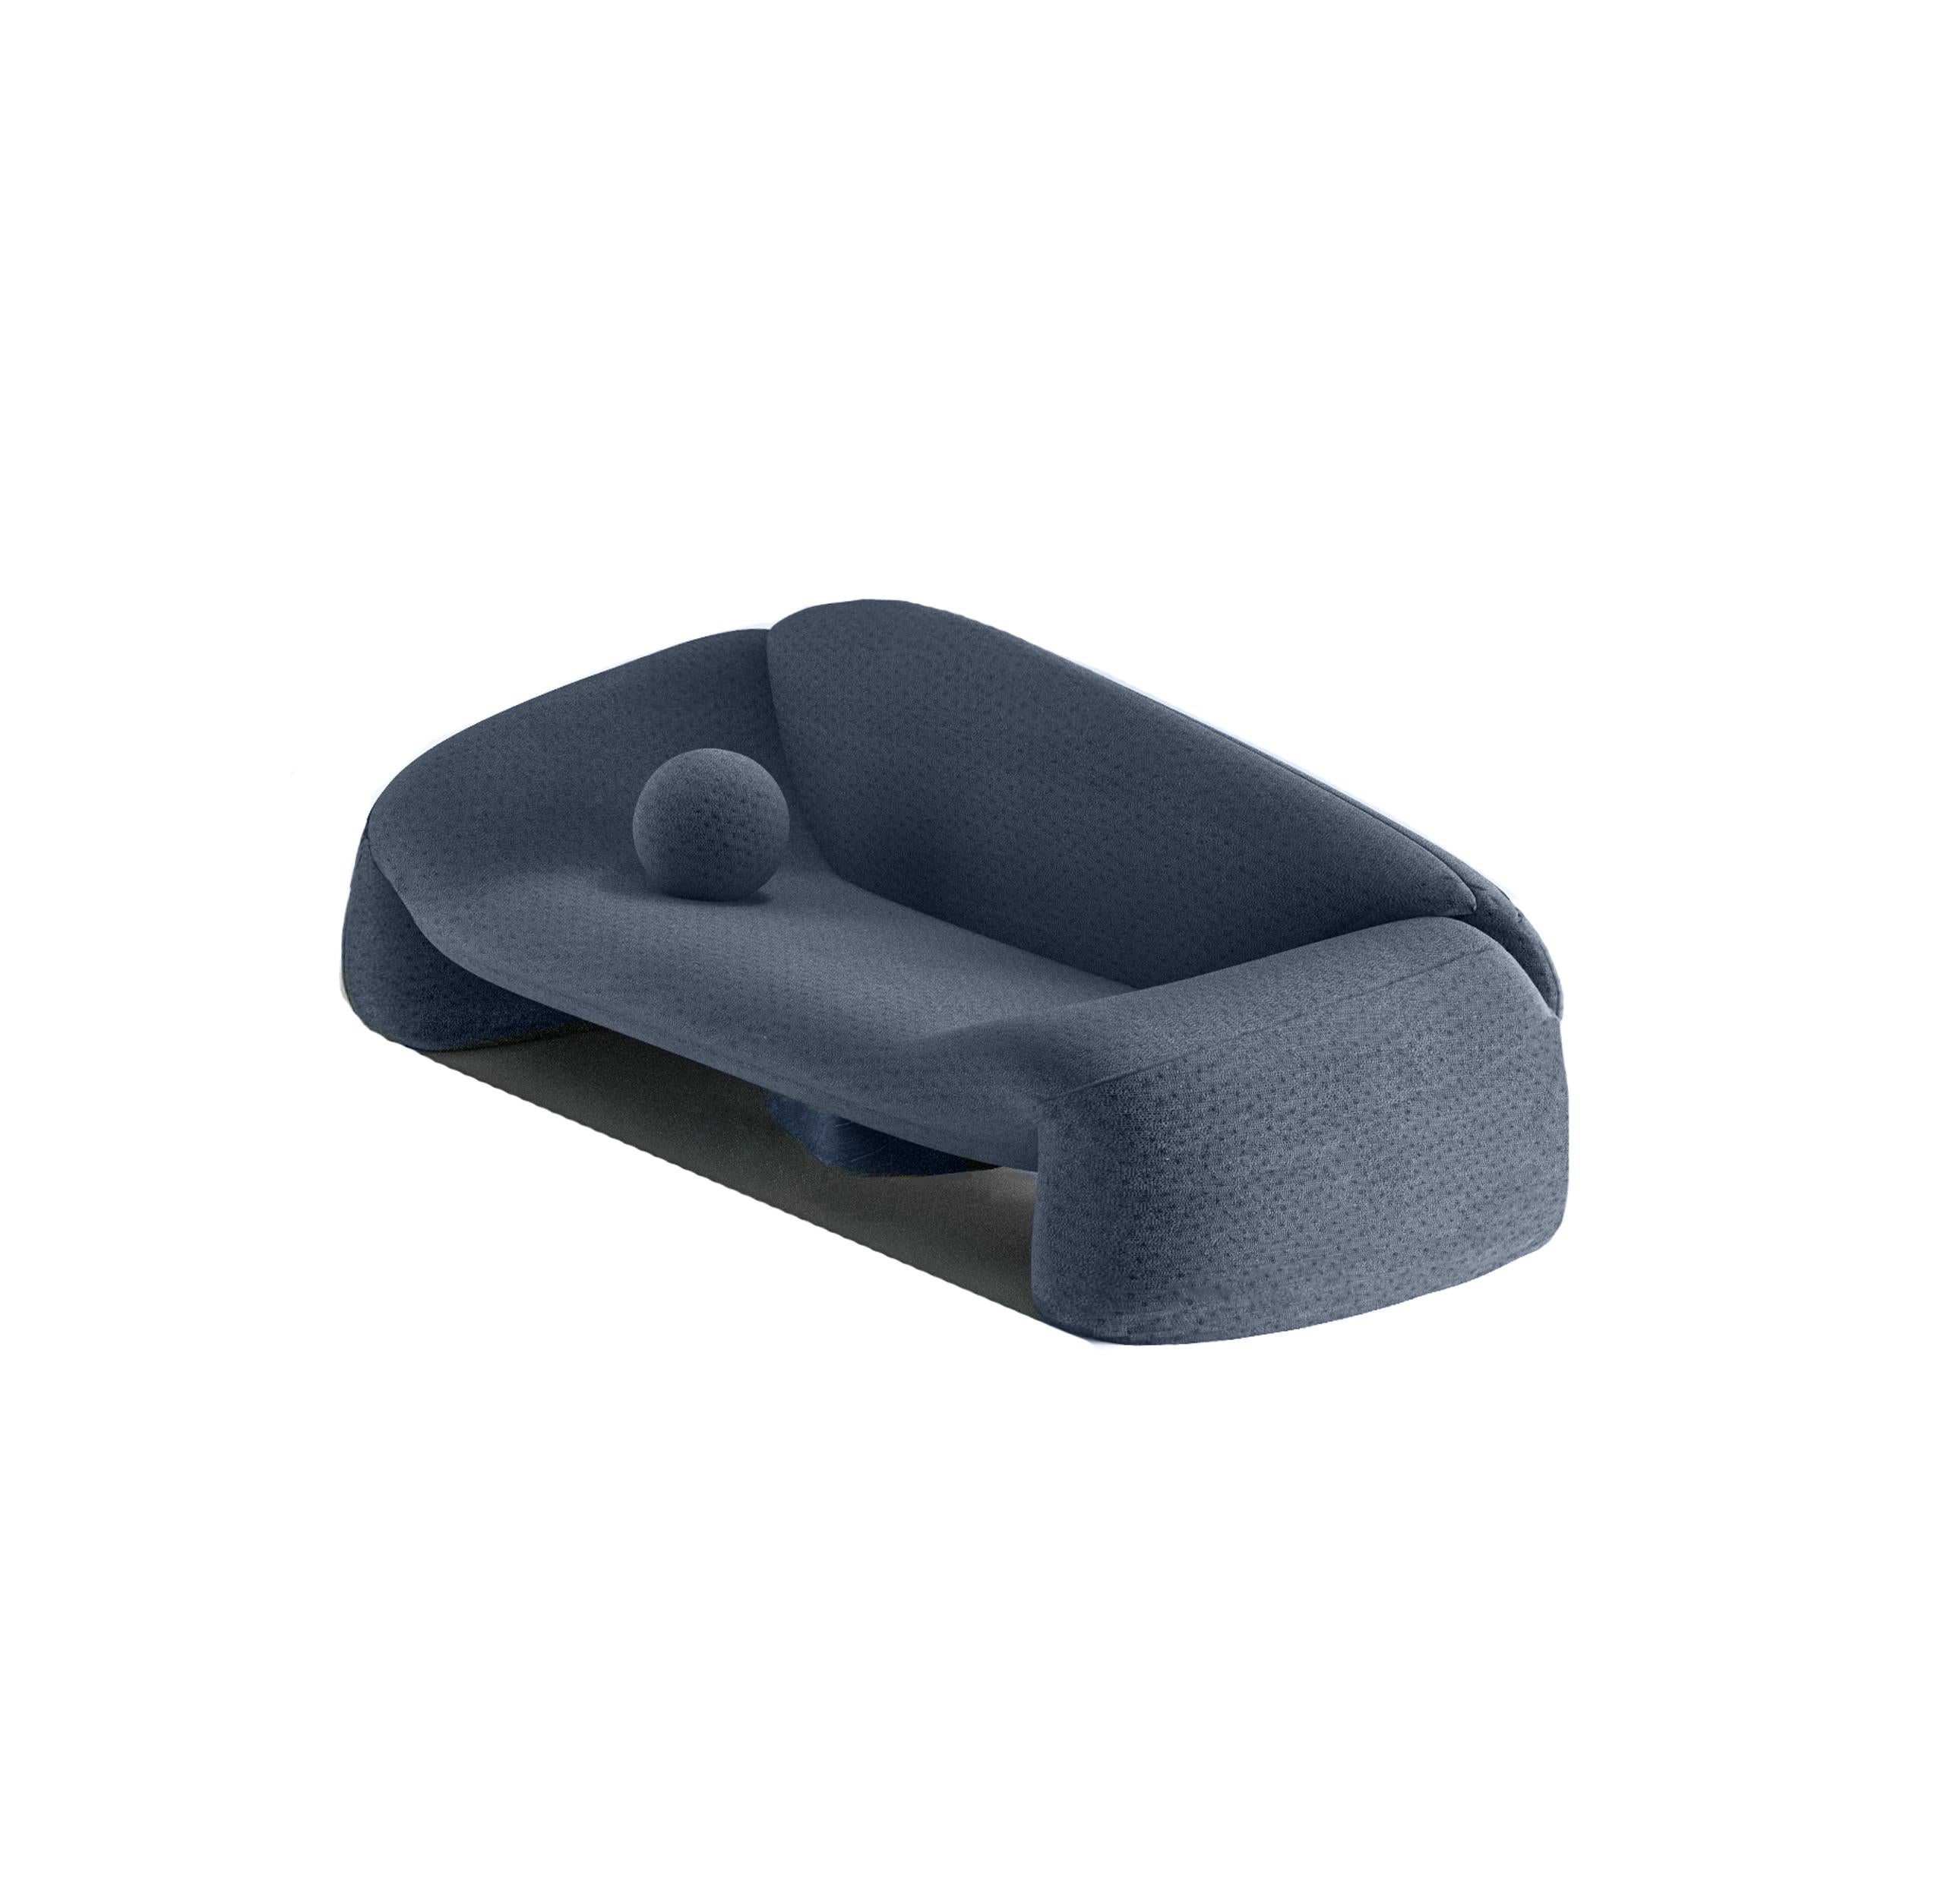 Jell-Sofa aus blauem Stoff von Alter Ego Studio


Abmessungen
B 260 cm 
T 120 cm
H 85 cm

Produktmerkmale

Produktoptionen:

Polsterung:
Erhältlich in allen Alter Ego-Ledern und -Stoffen.
Erhältlich in kundenspezifischem MATERIAL.
